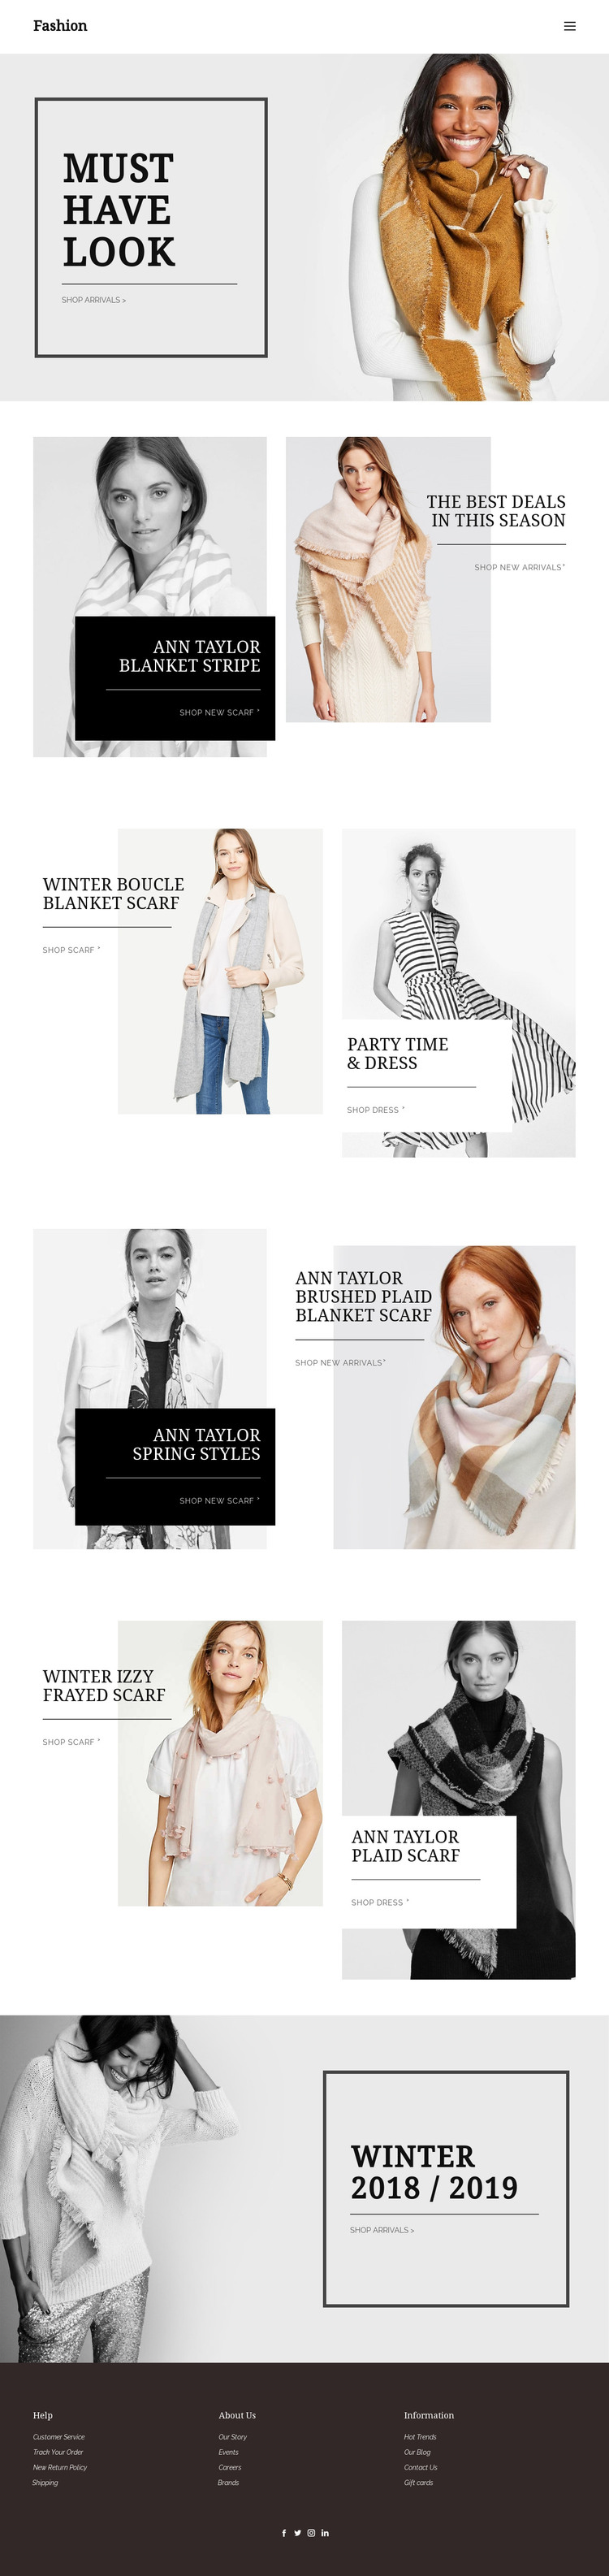 Personal shopper service Homepage Design